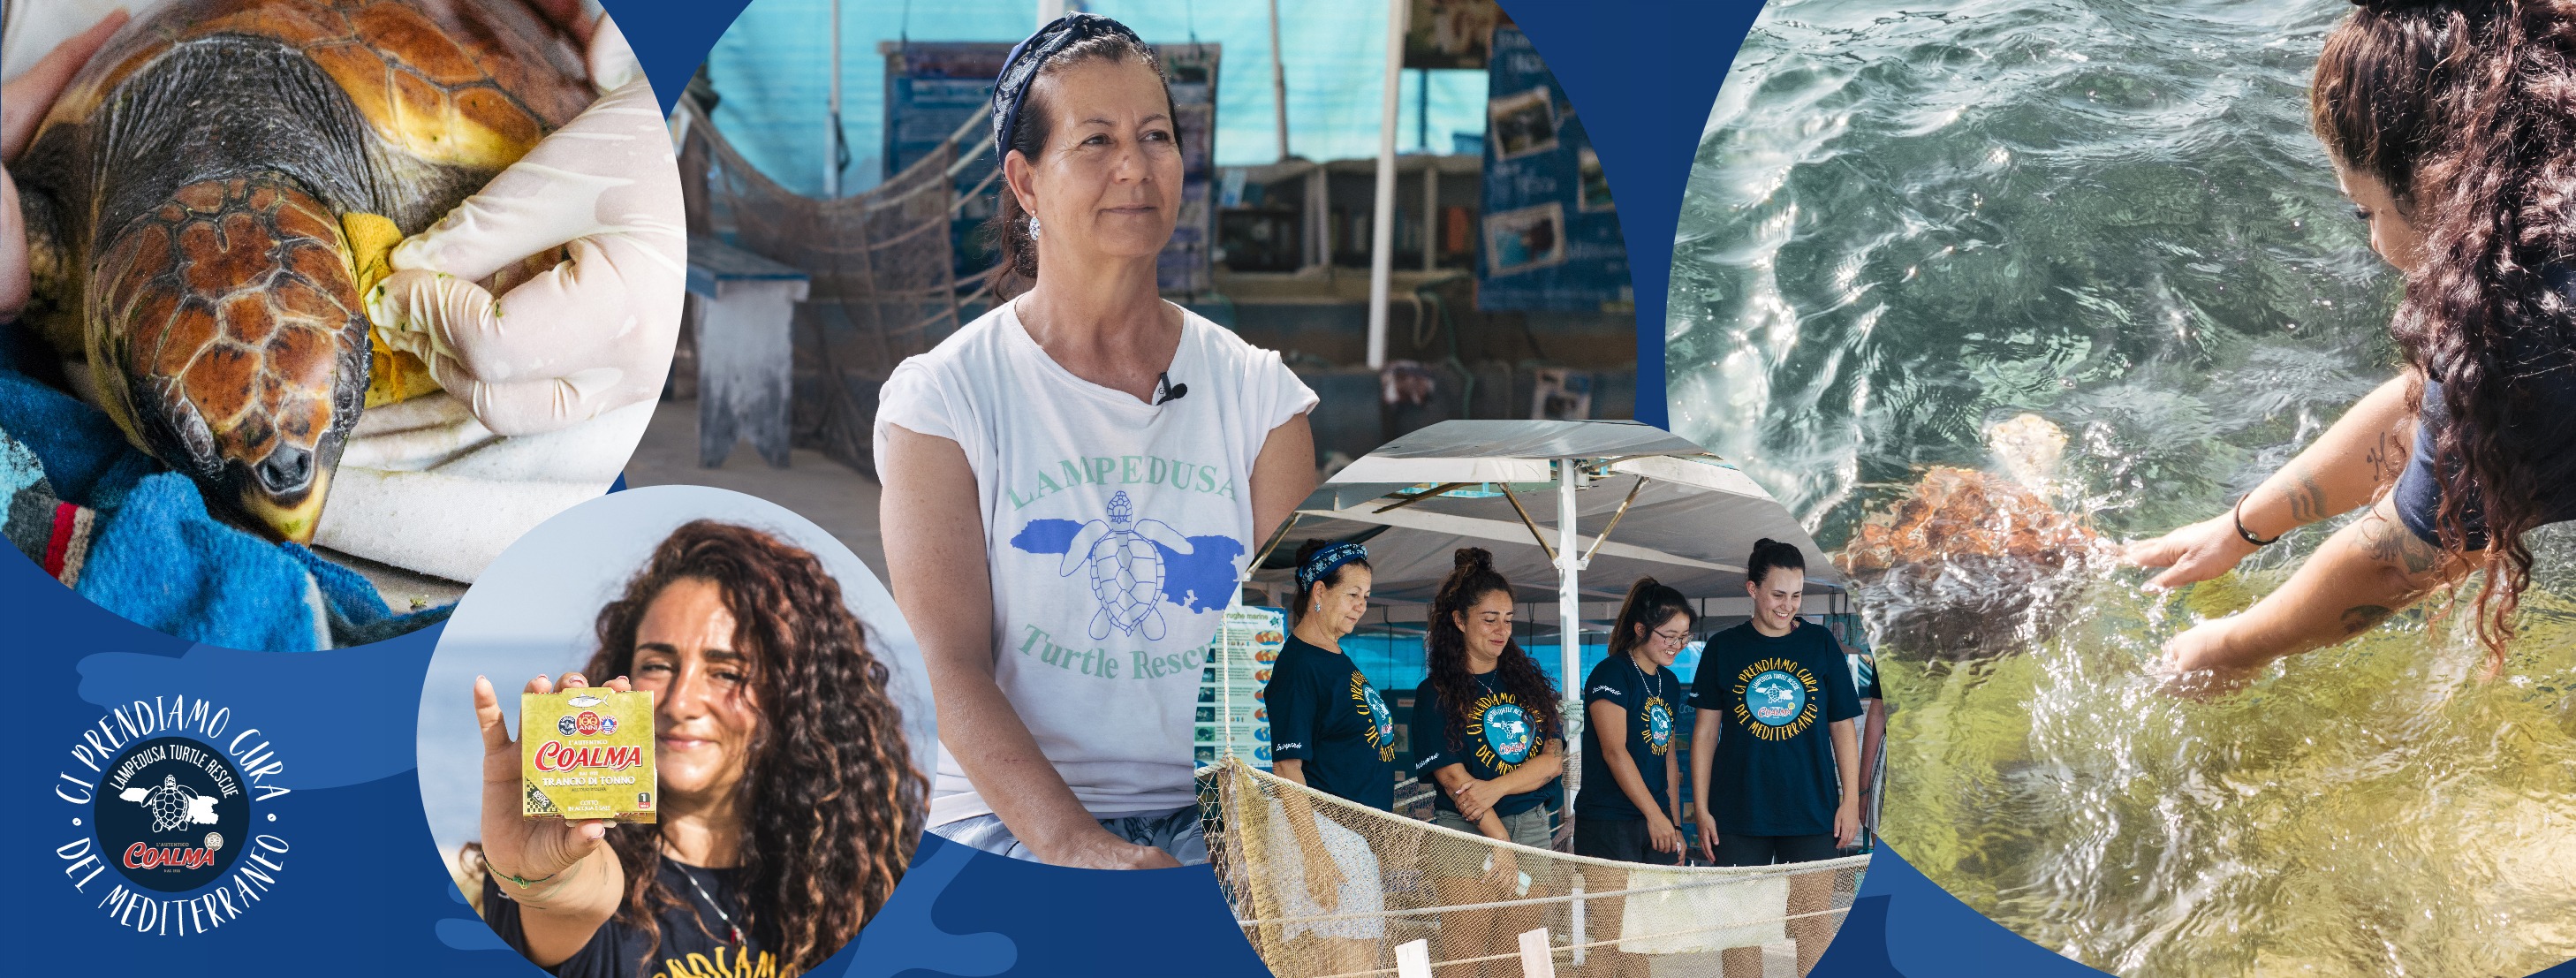 Coalma sostiene il Lampedusa Turtle Rescue